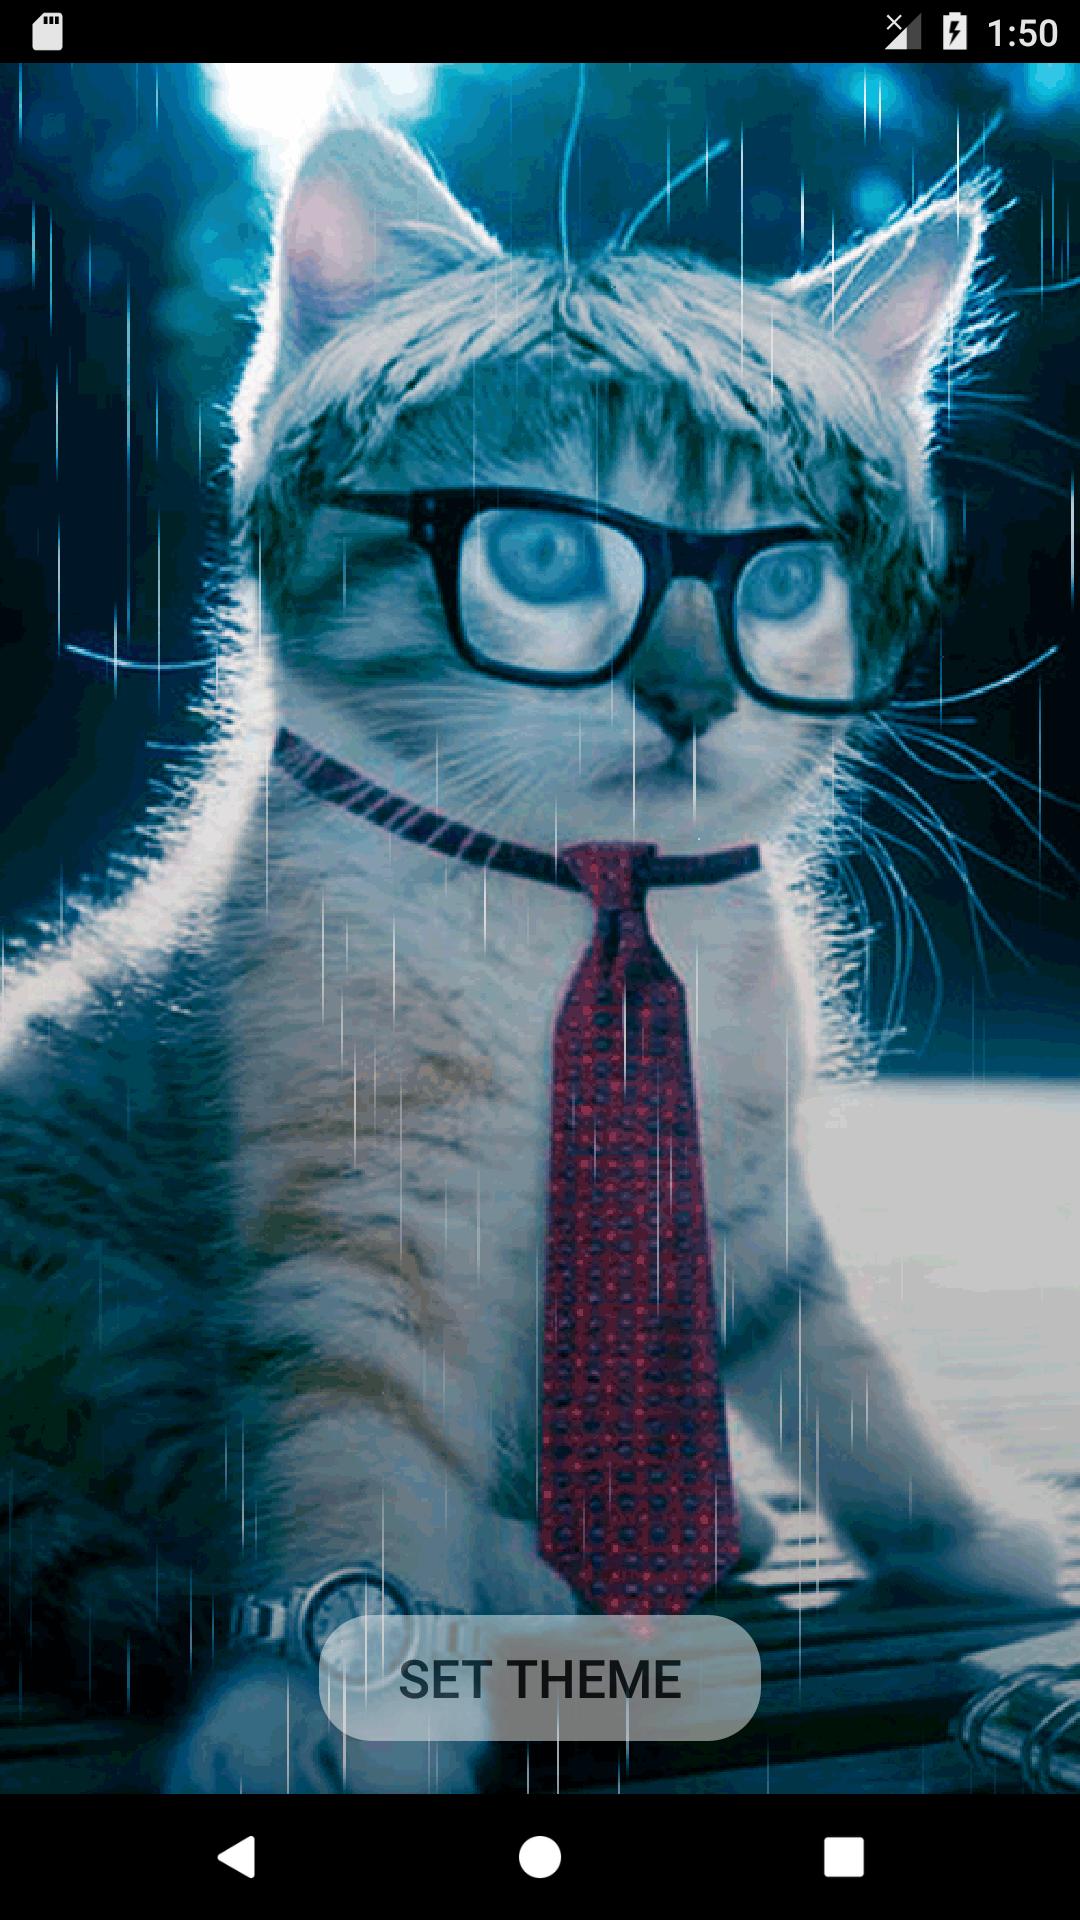 Tema Kucing Lucu Imut Animasi Bergerak For Android Apk Download